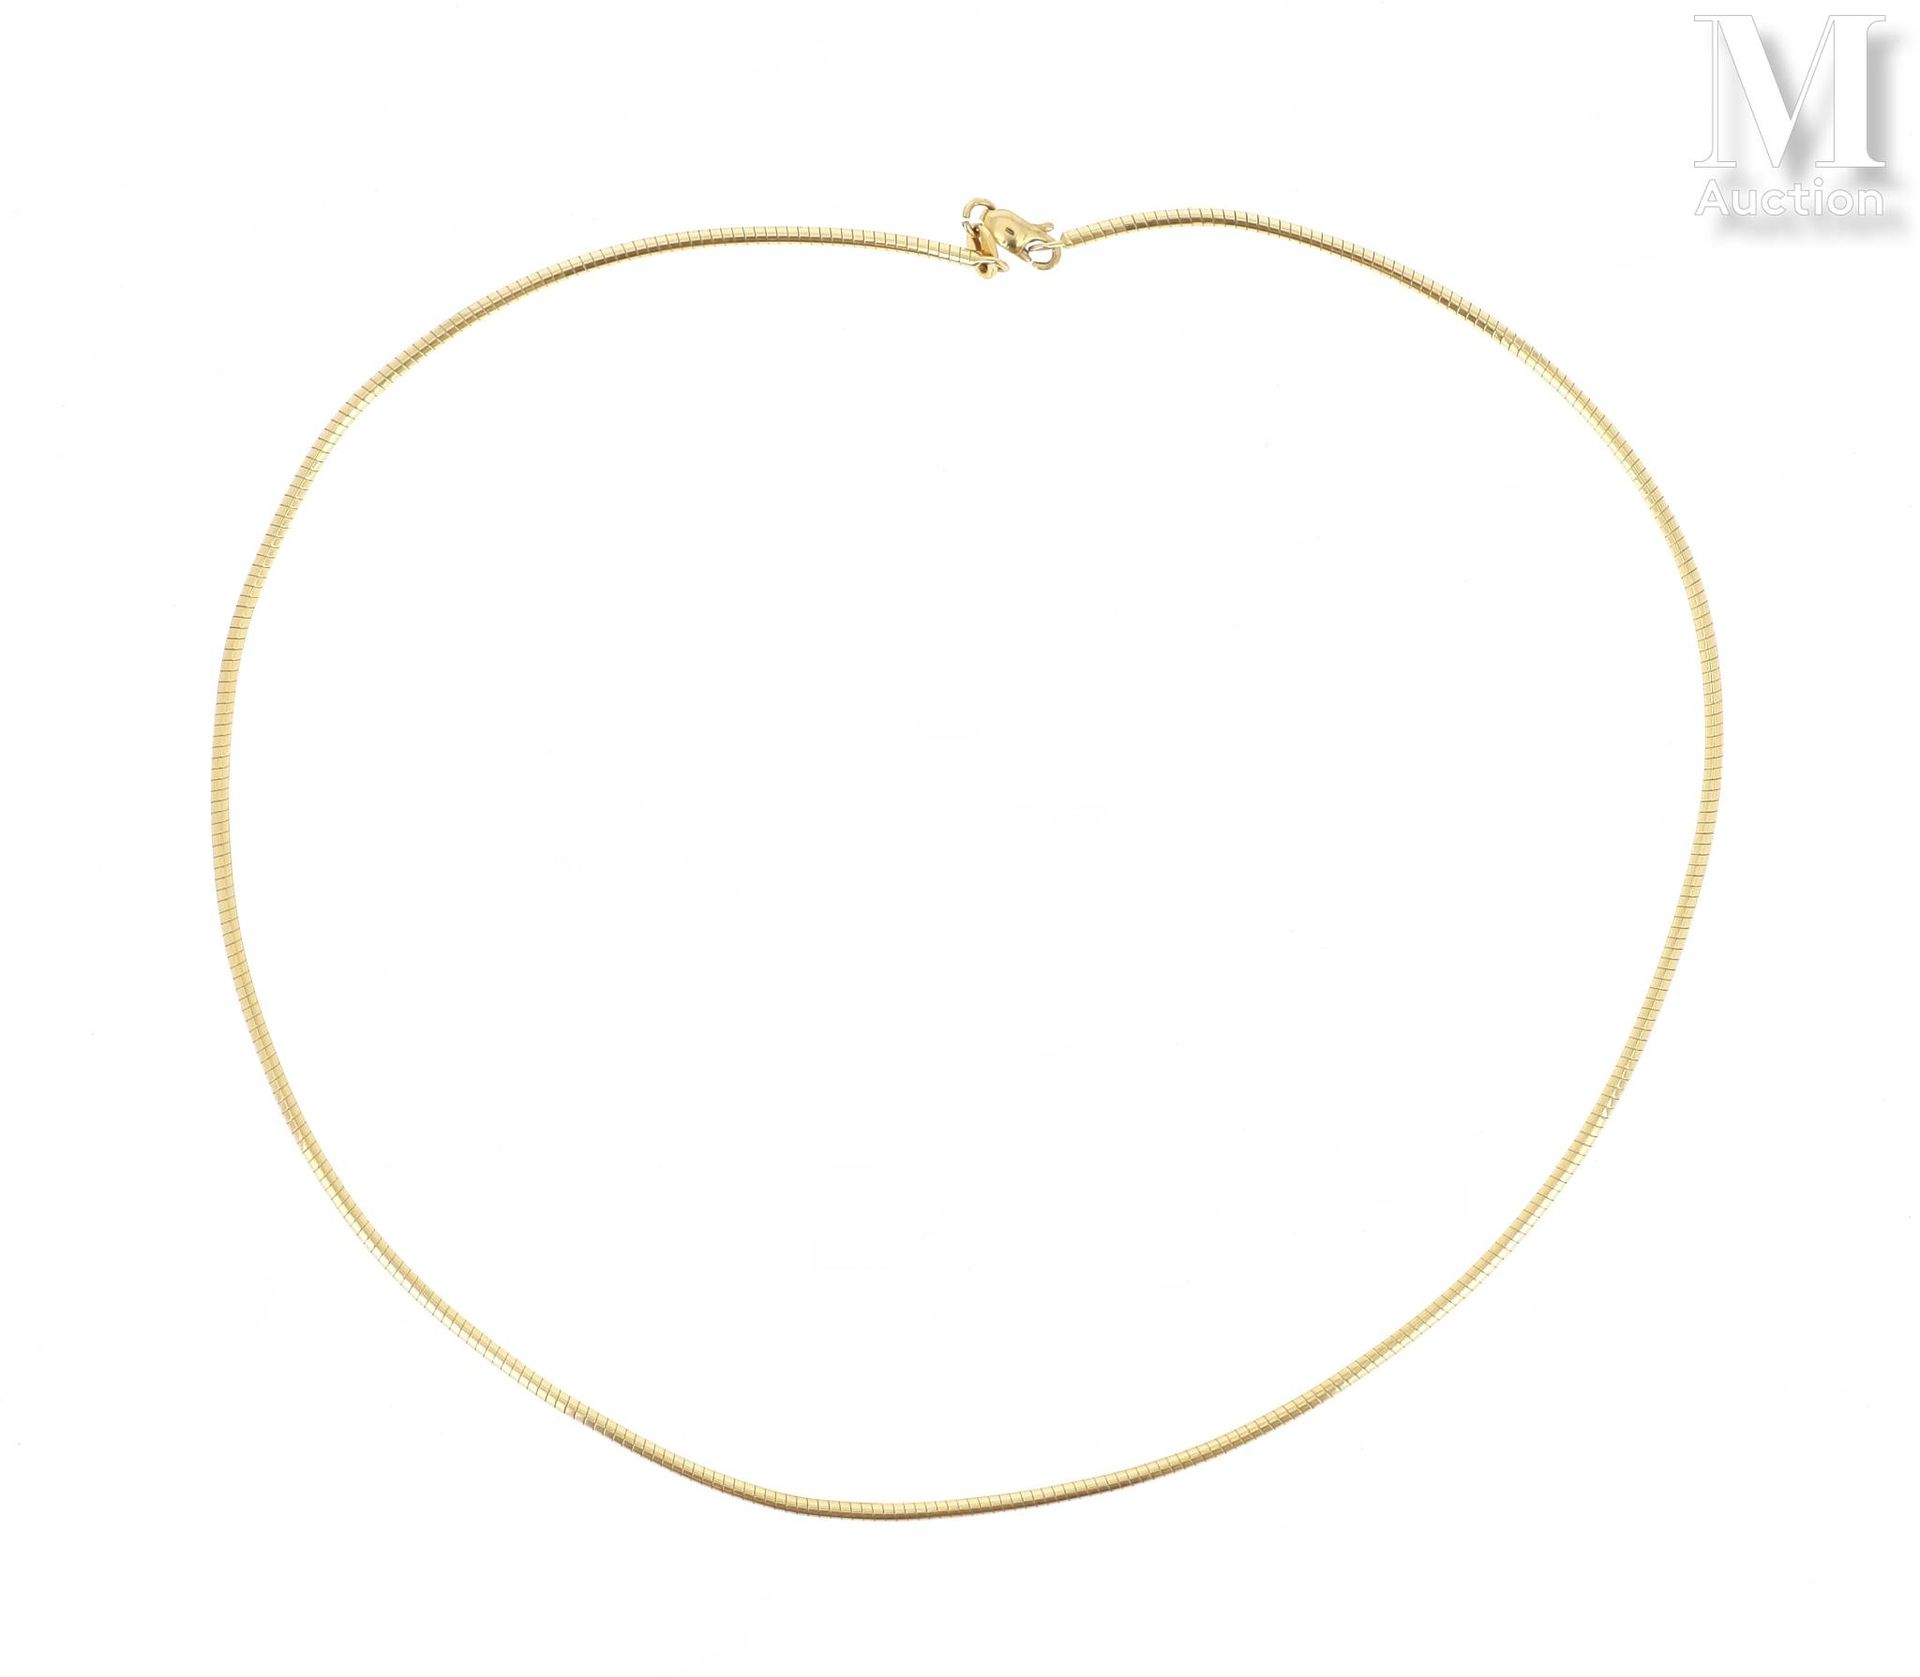 COLLIER 18K黄金（750°/°）项链，蛇形链。

毛重：12,4克。

长：约43厘米